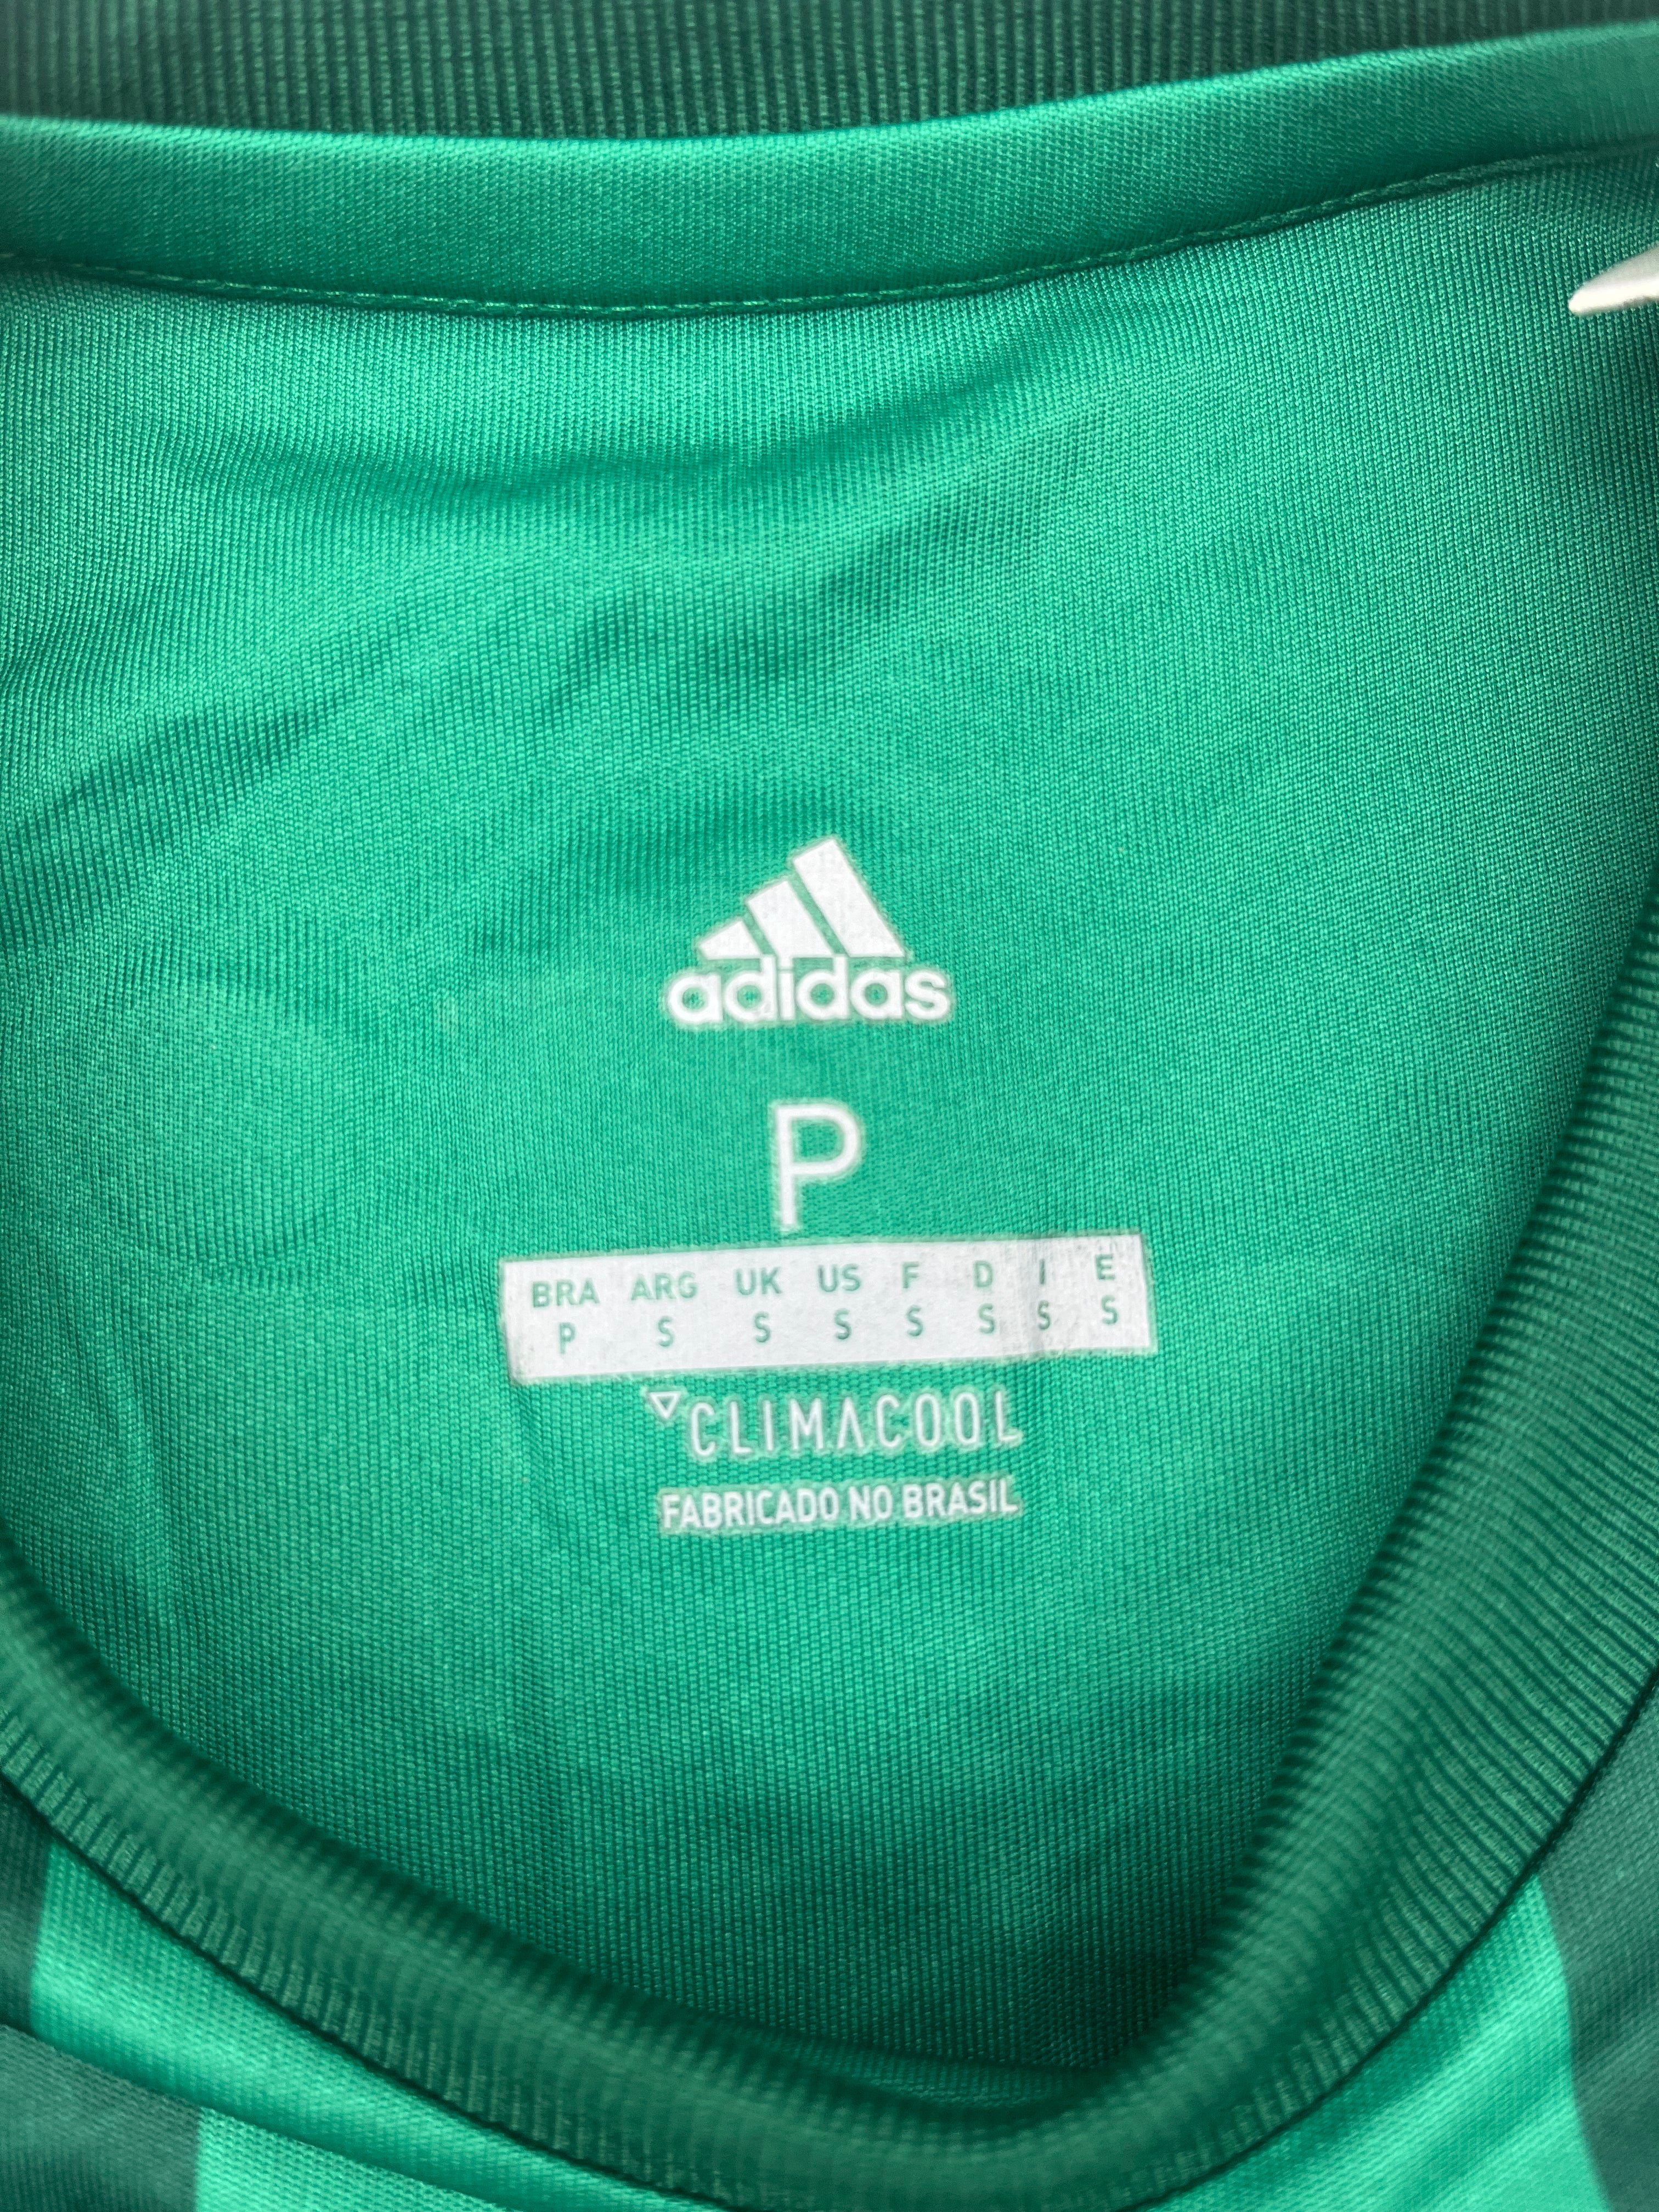 Camiseta local Palmeiras 2017 (S) 9/10